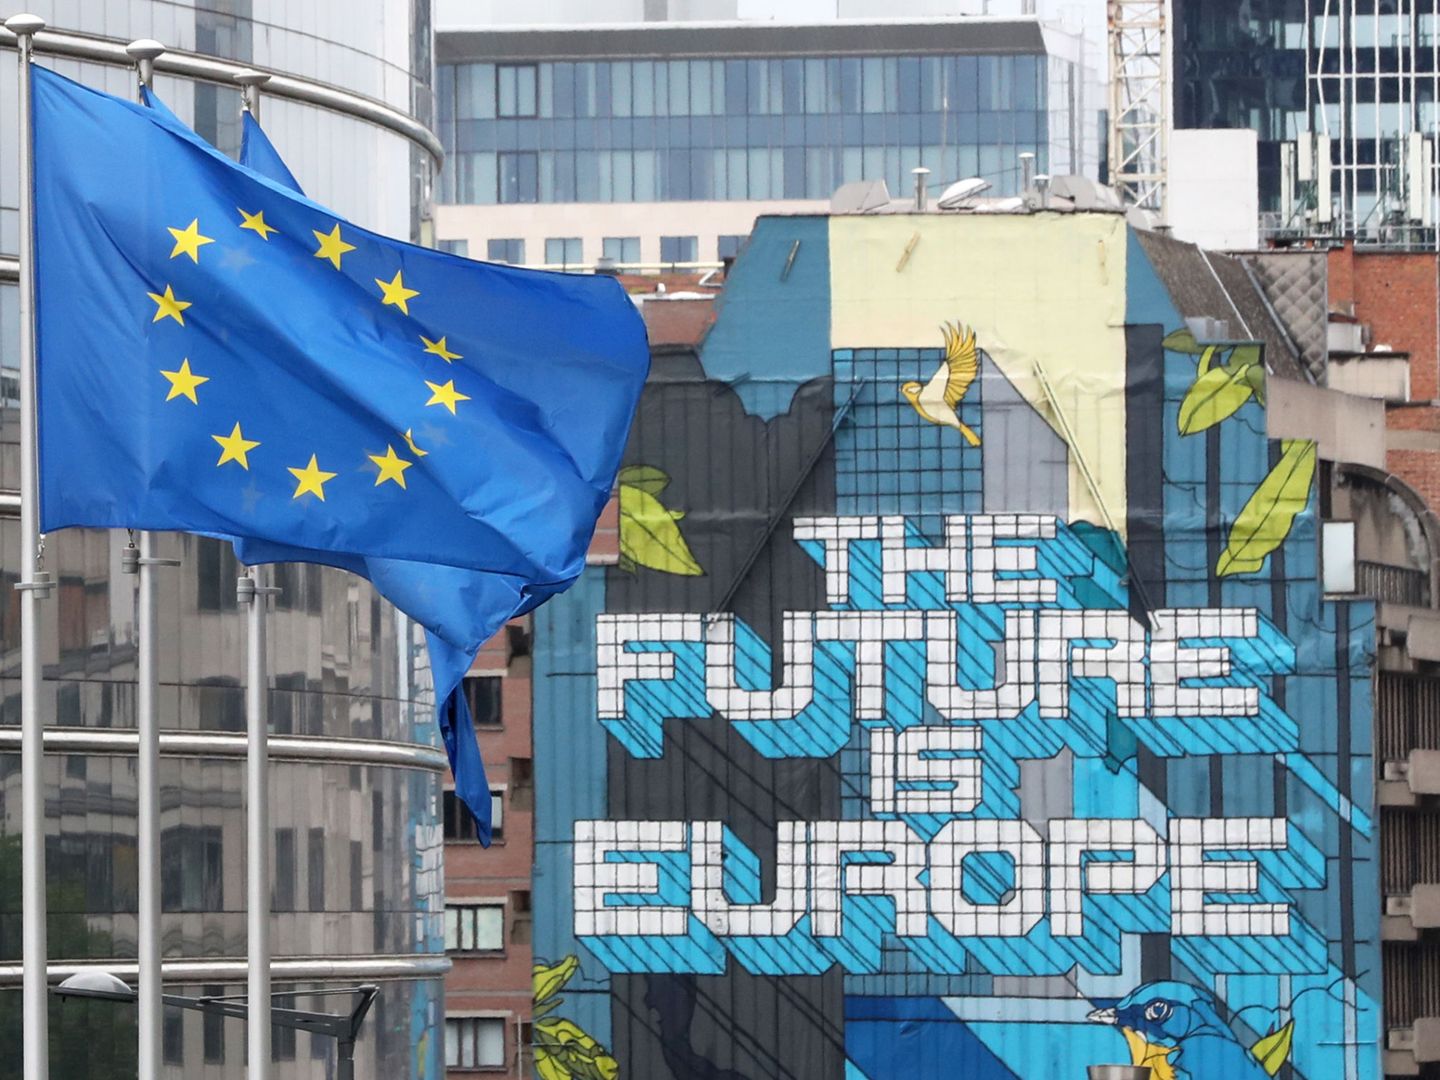 Banderas europeas en el corazón del barrio europeo de Bruselas. (Reuters)